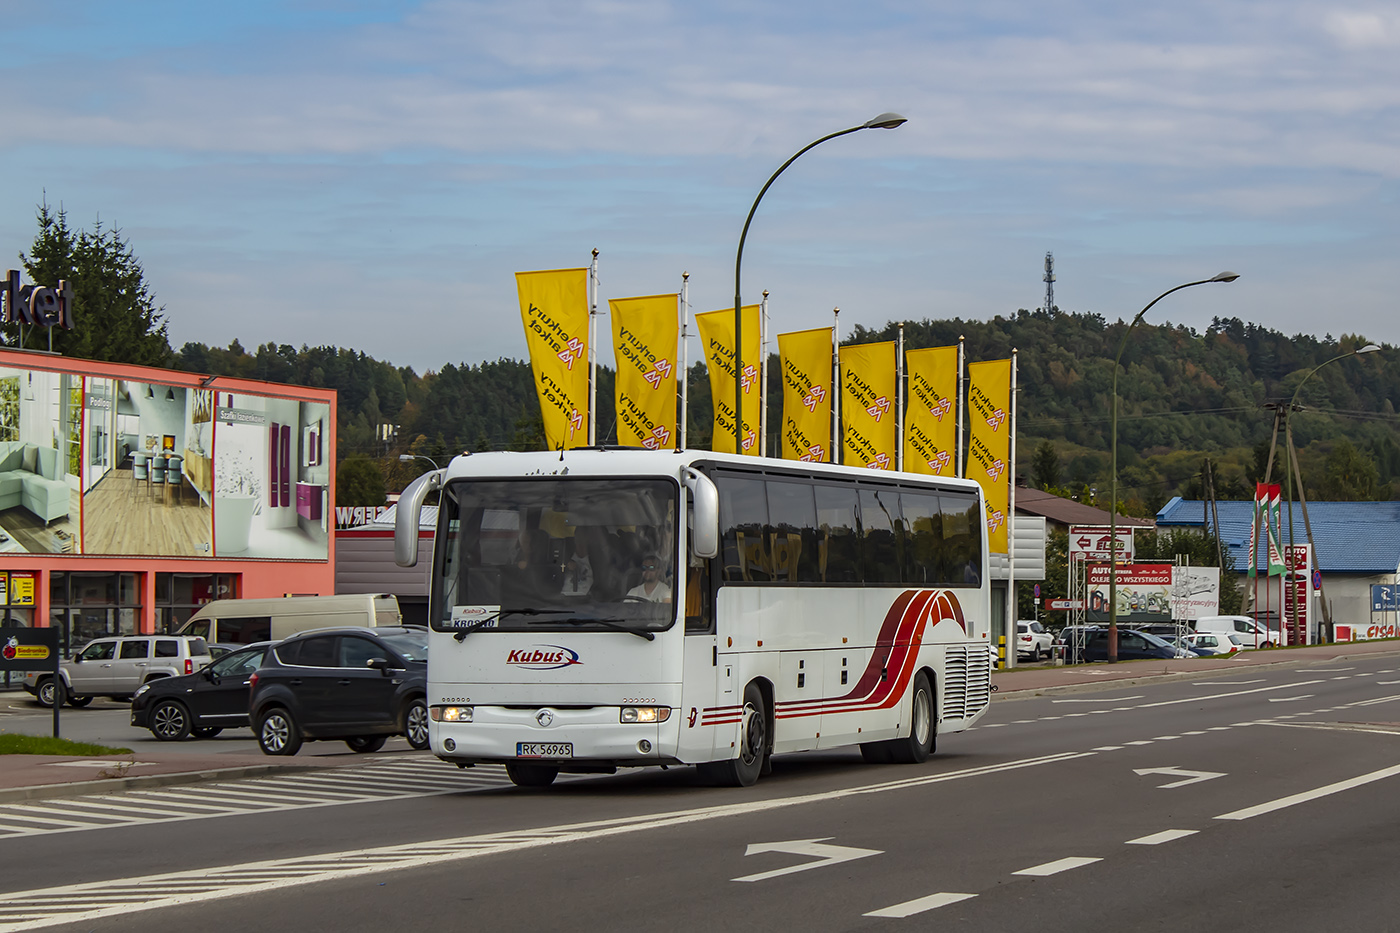 Krosno, Irisbus Iliade # RK 56965